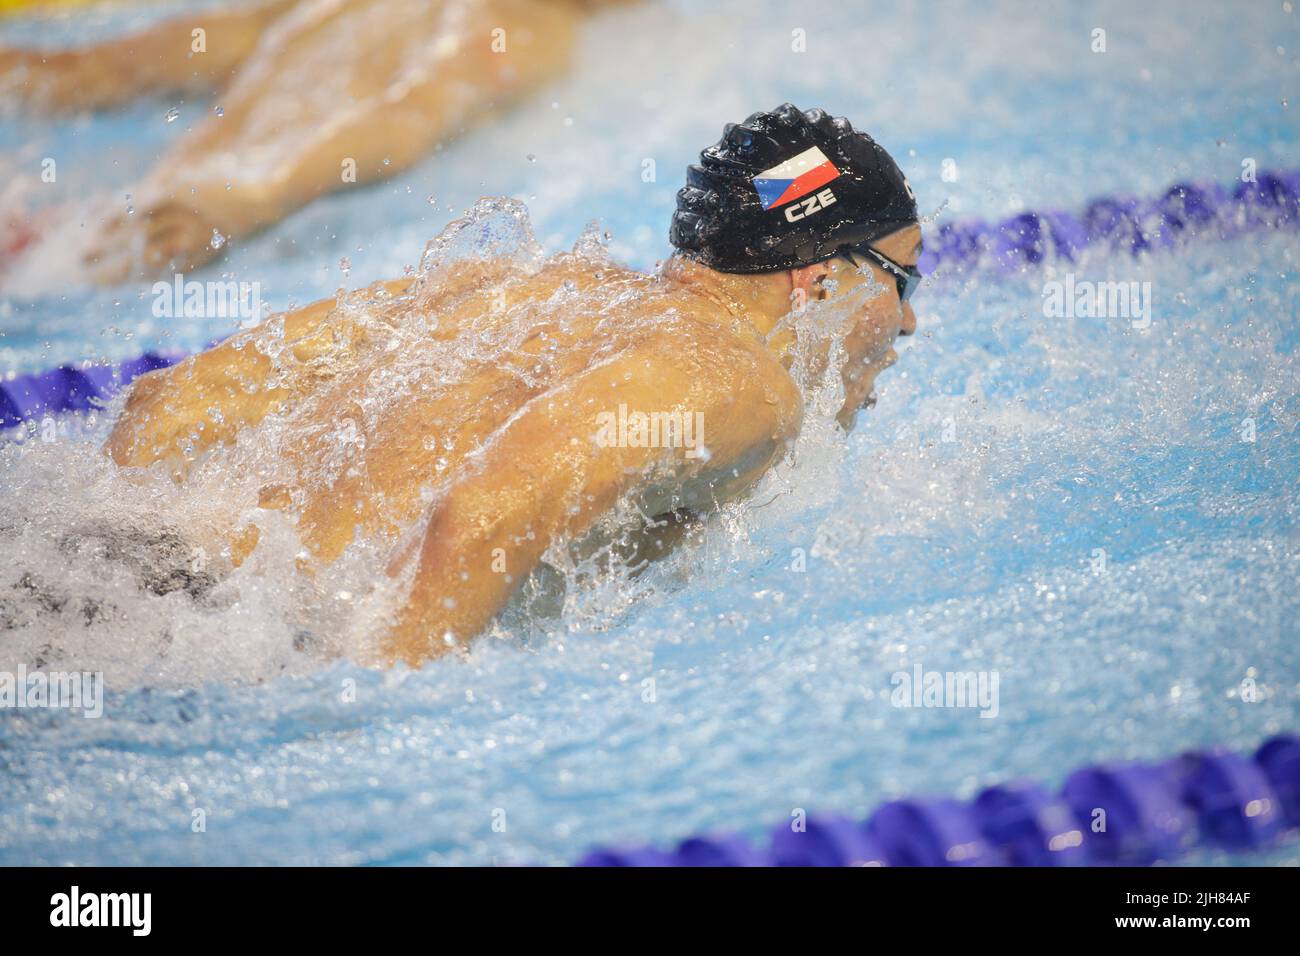 Otopeni, Romania - 8 luglio 2022: Dettagli con un atleta professionista ceco maschio nuoto in una piscina olimpionica farfalla stile. Foto Stock